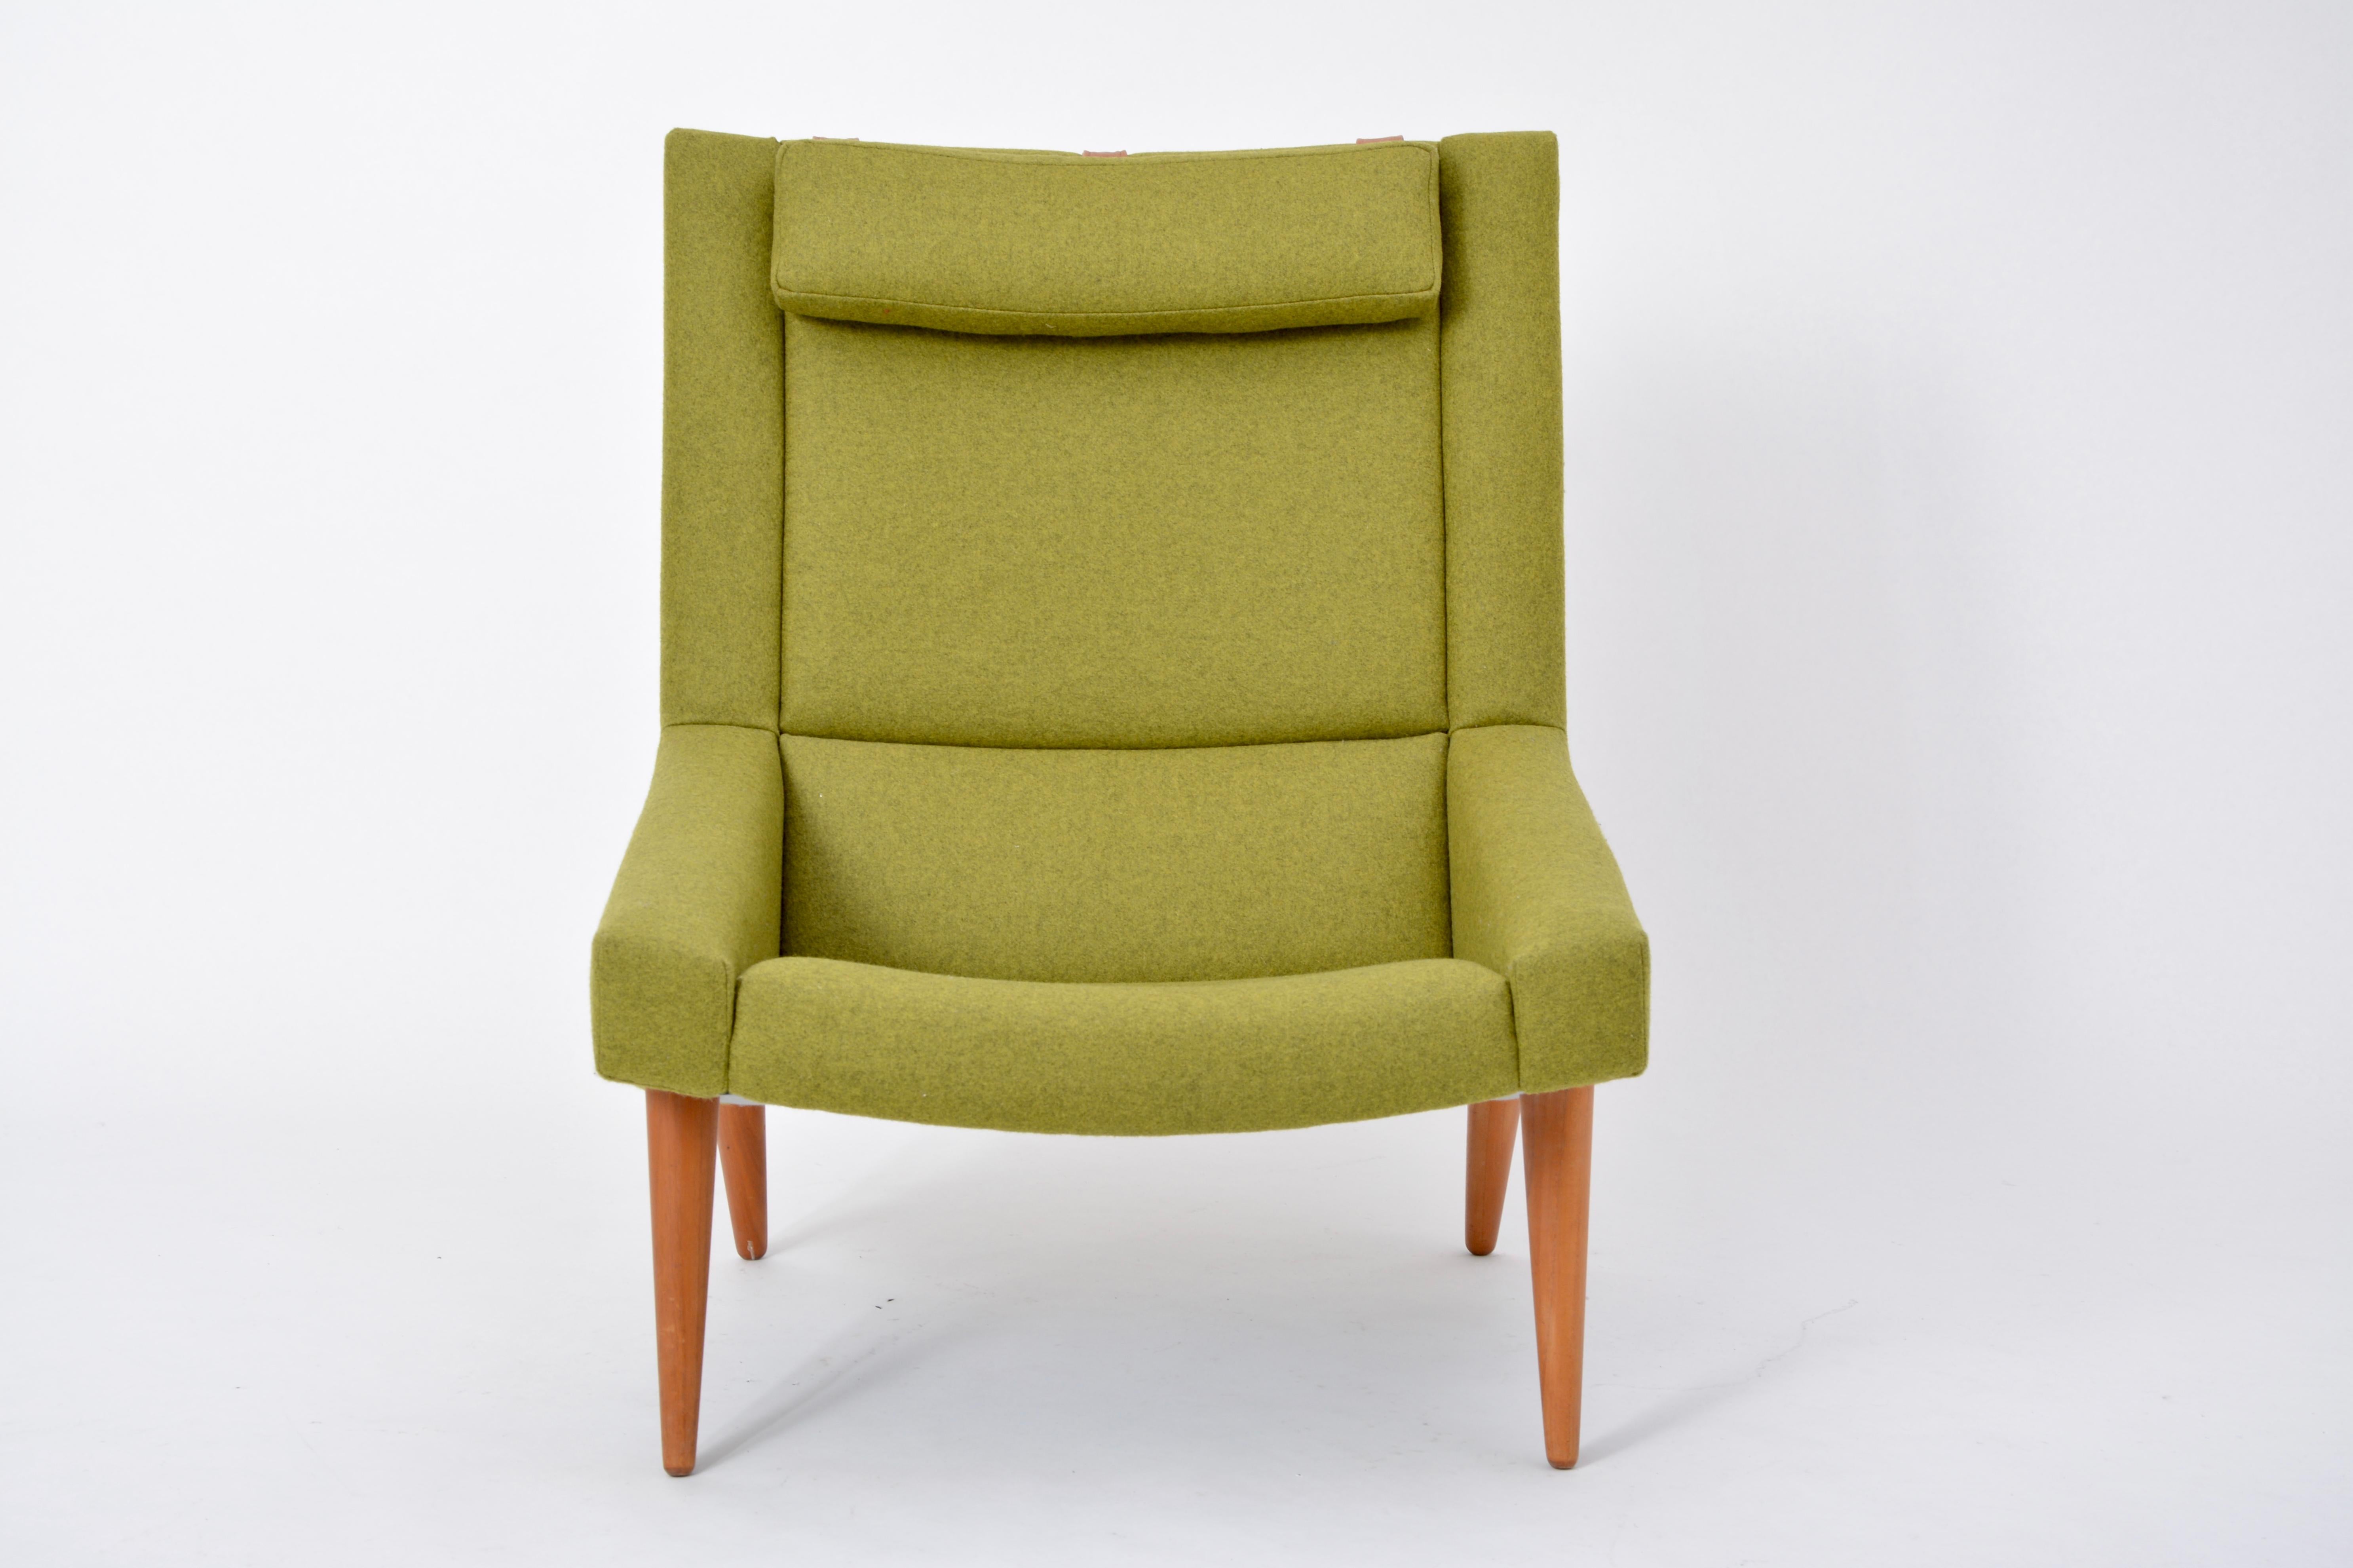 Sessel mit hoher Rückenlehne von Illum Wikkelsø für Soren Willadsen, 1960er Jahre (Moderne der Mitte des Jahrhunderts)